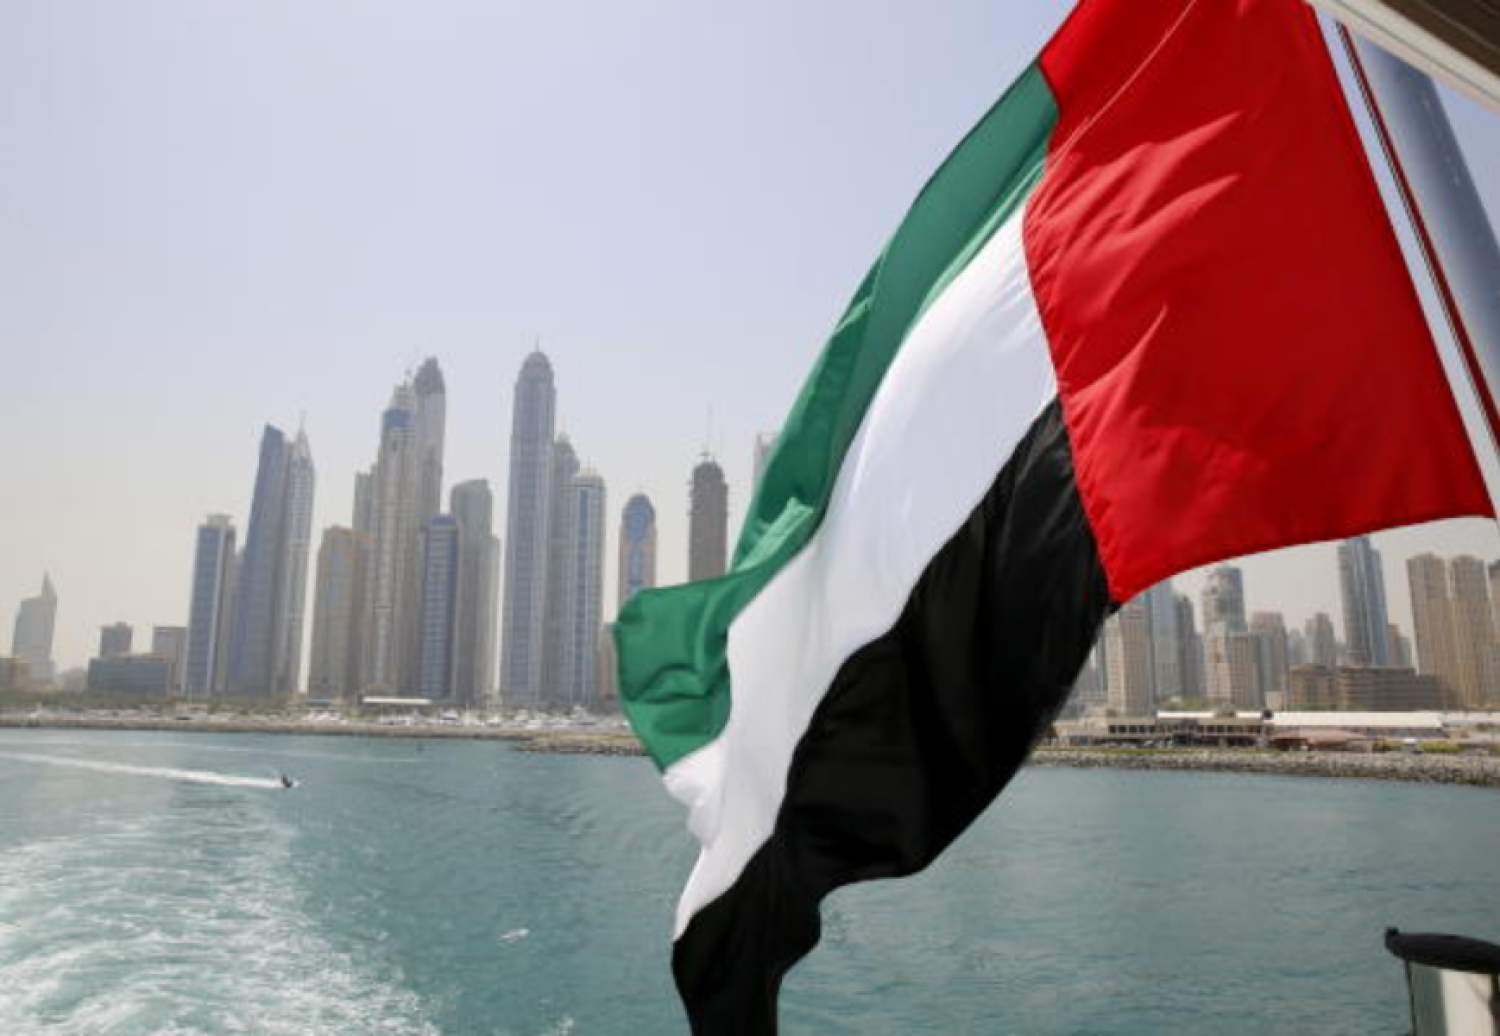 رفعت مجموعة العمل المالي الإمارات من القائمة الرمادية للدول والأقاليم التي تتطلب مزيدا من التدقيق (رويترز)